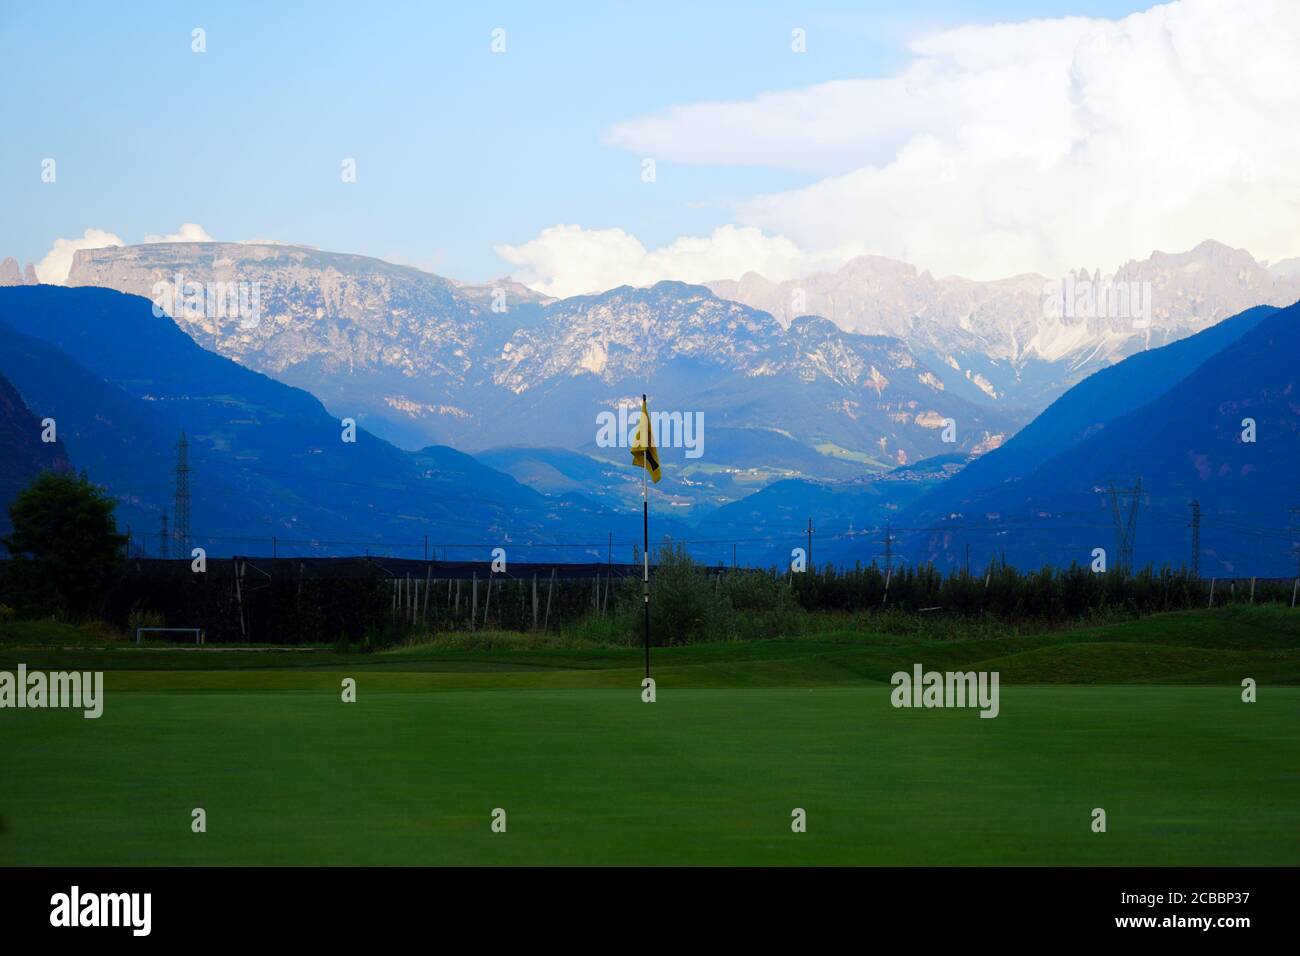 Bandera en el verde del campo de golf Blue Monster en el sur de Tirol, Italia. Foto de stock